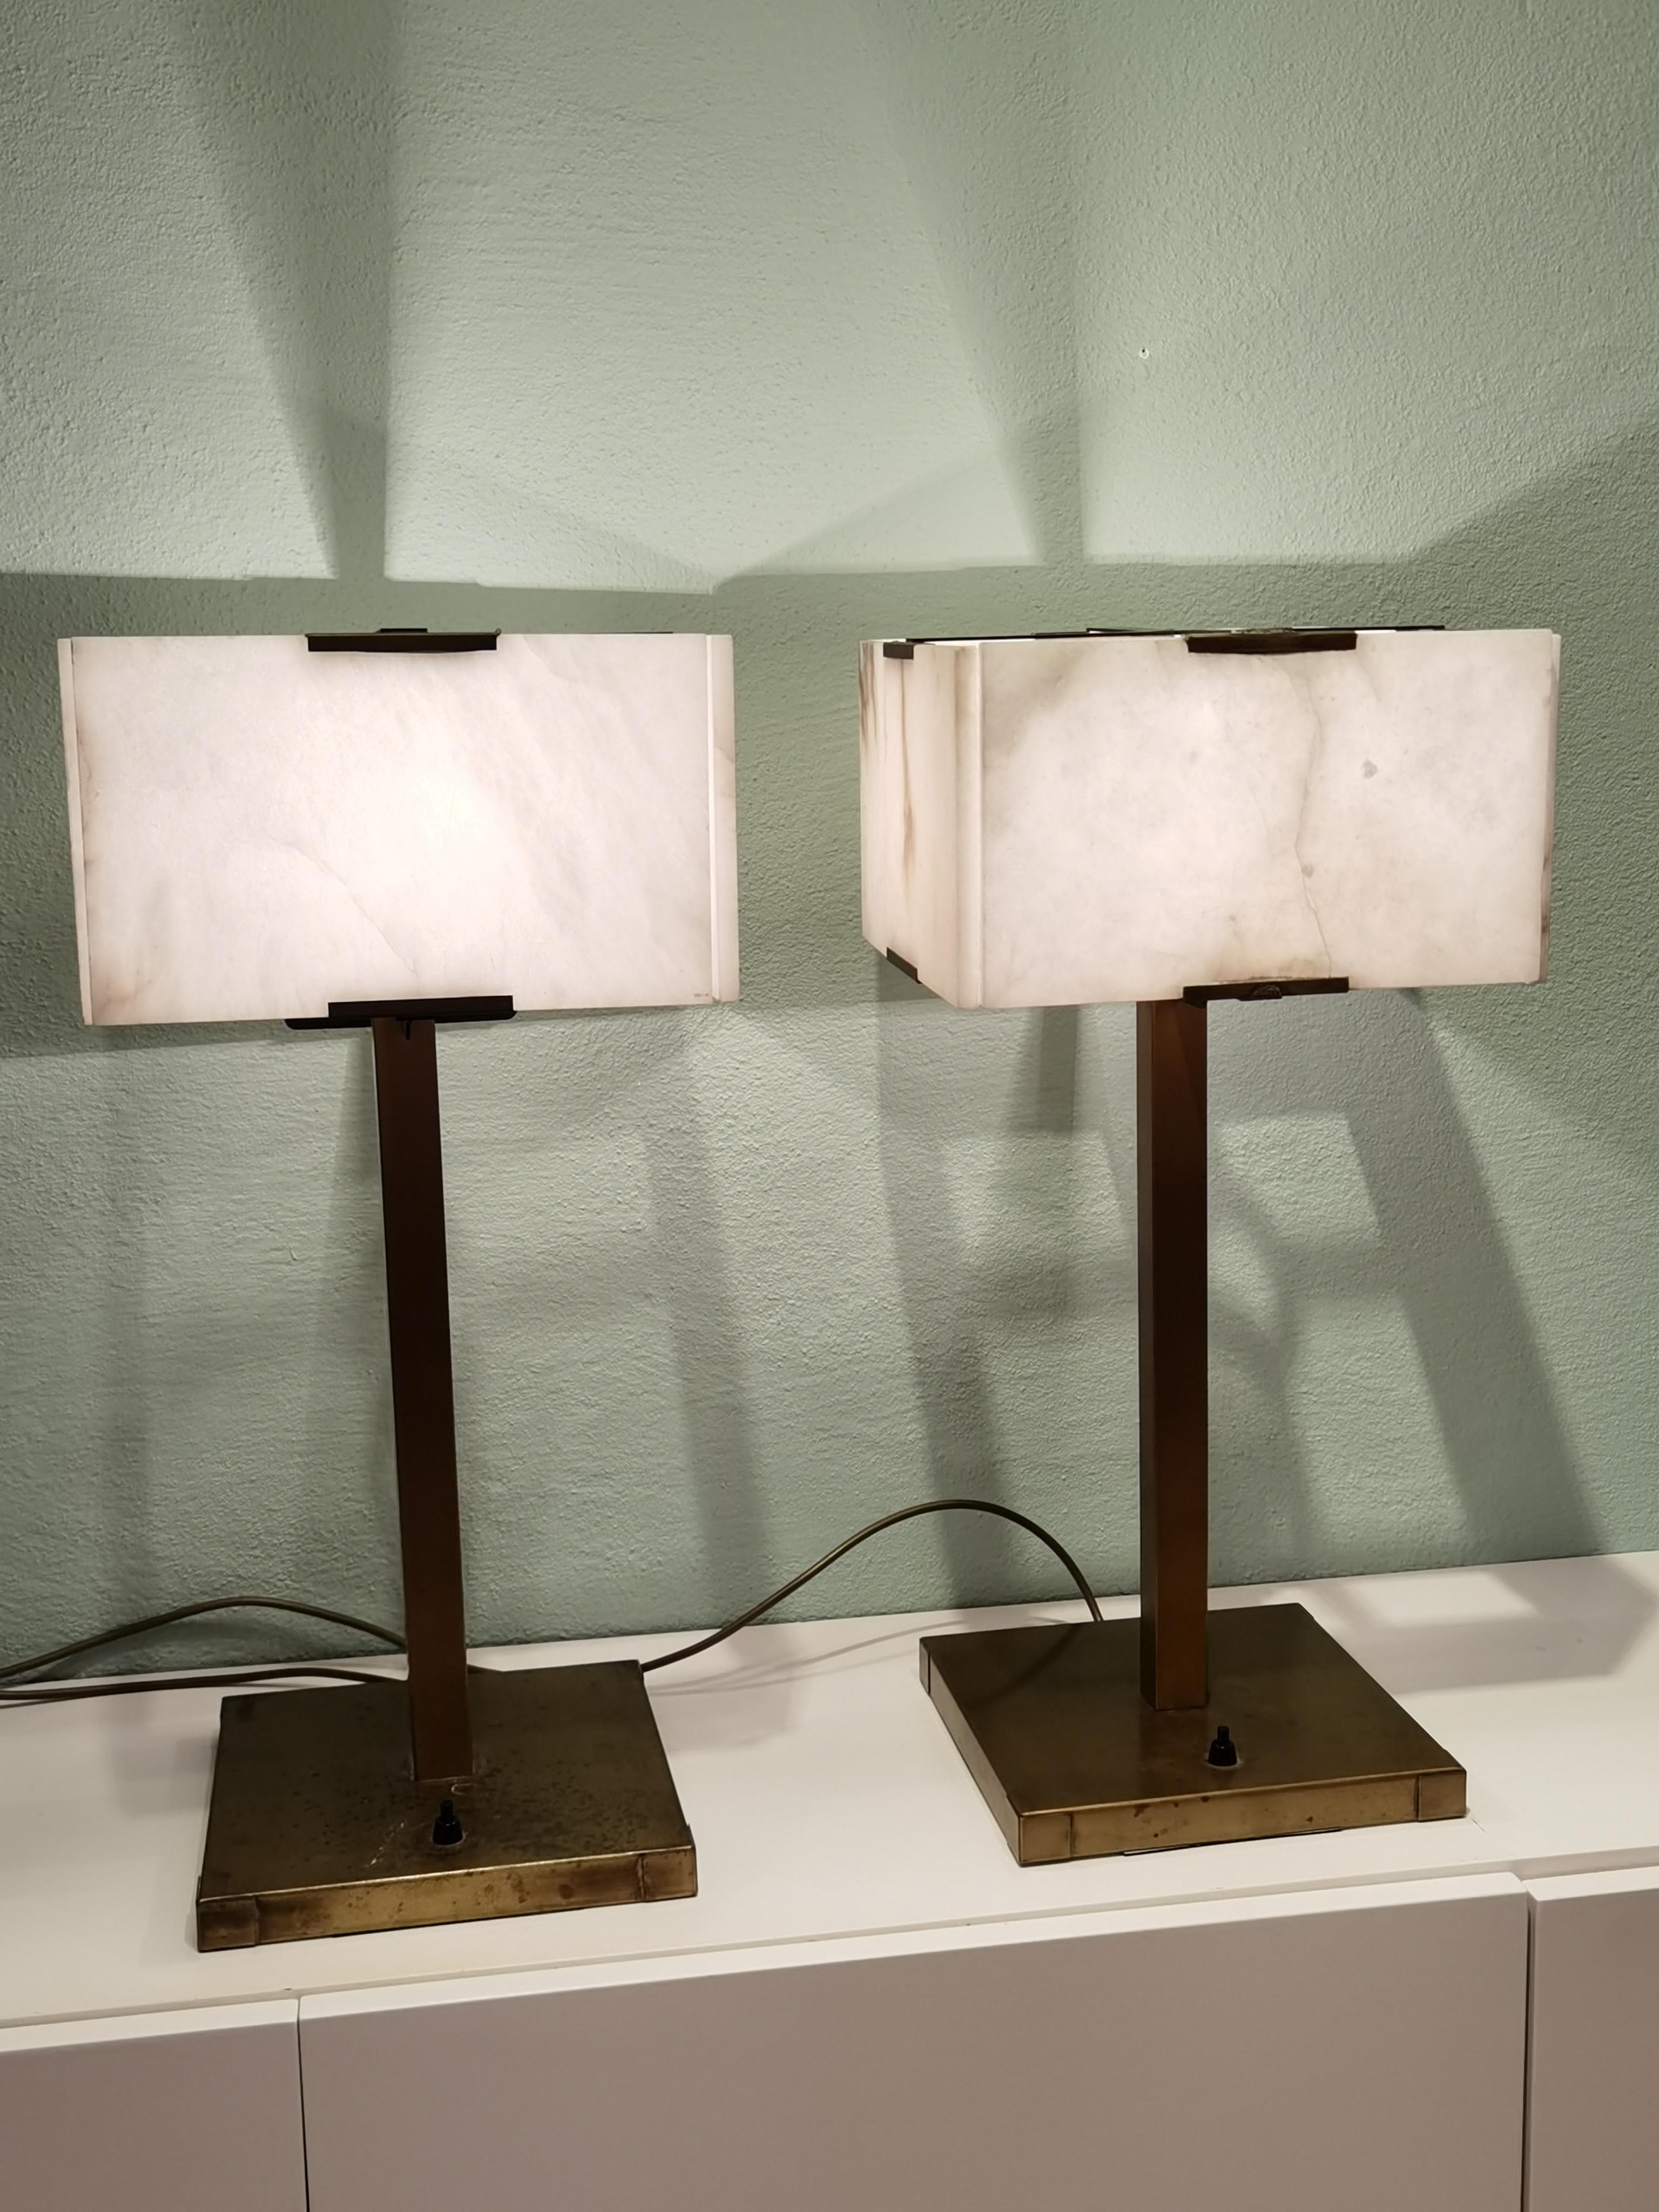 Lampes de table modernes du milieu du siècle avec abat-jour en albâtre. Les abat-jours rectangulaires sont formés par quatre plaques d'albâtre. Supports en laiton massif avec câbles électriques neufs. Fabriqué en France dans les années 1960.